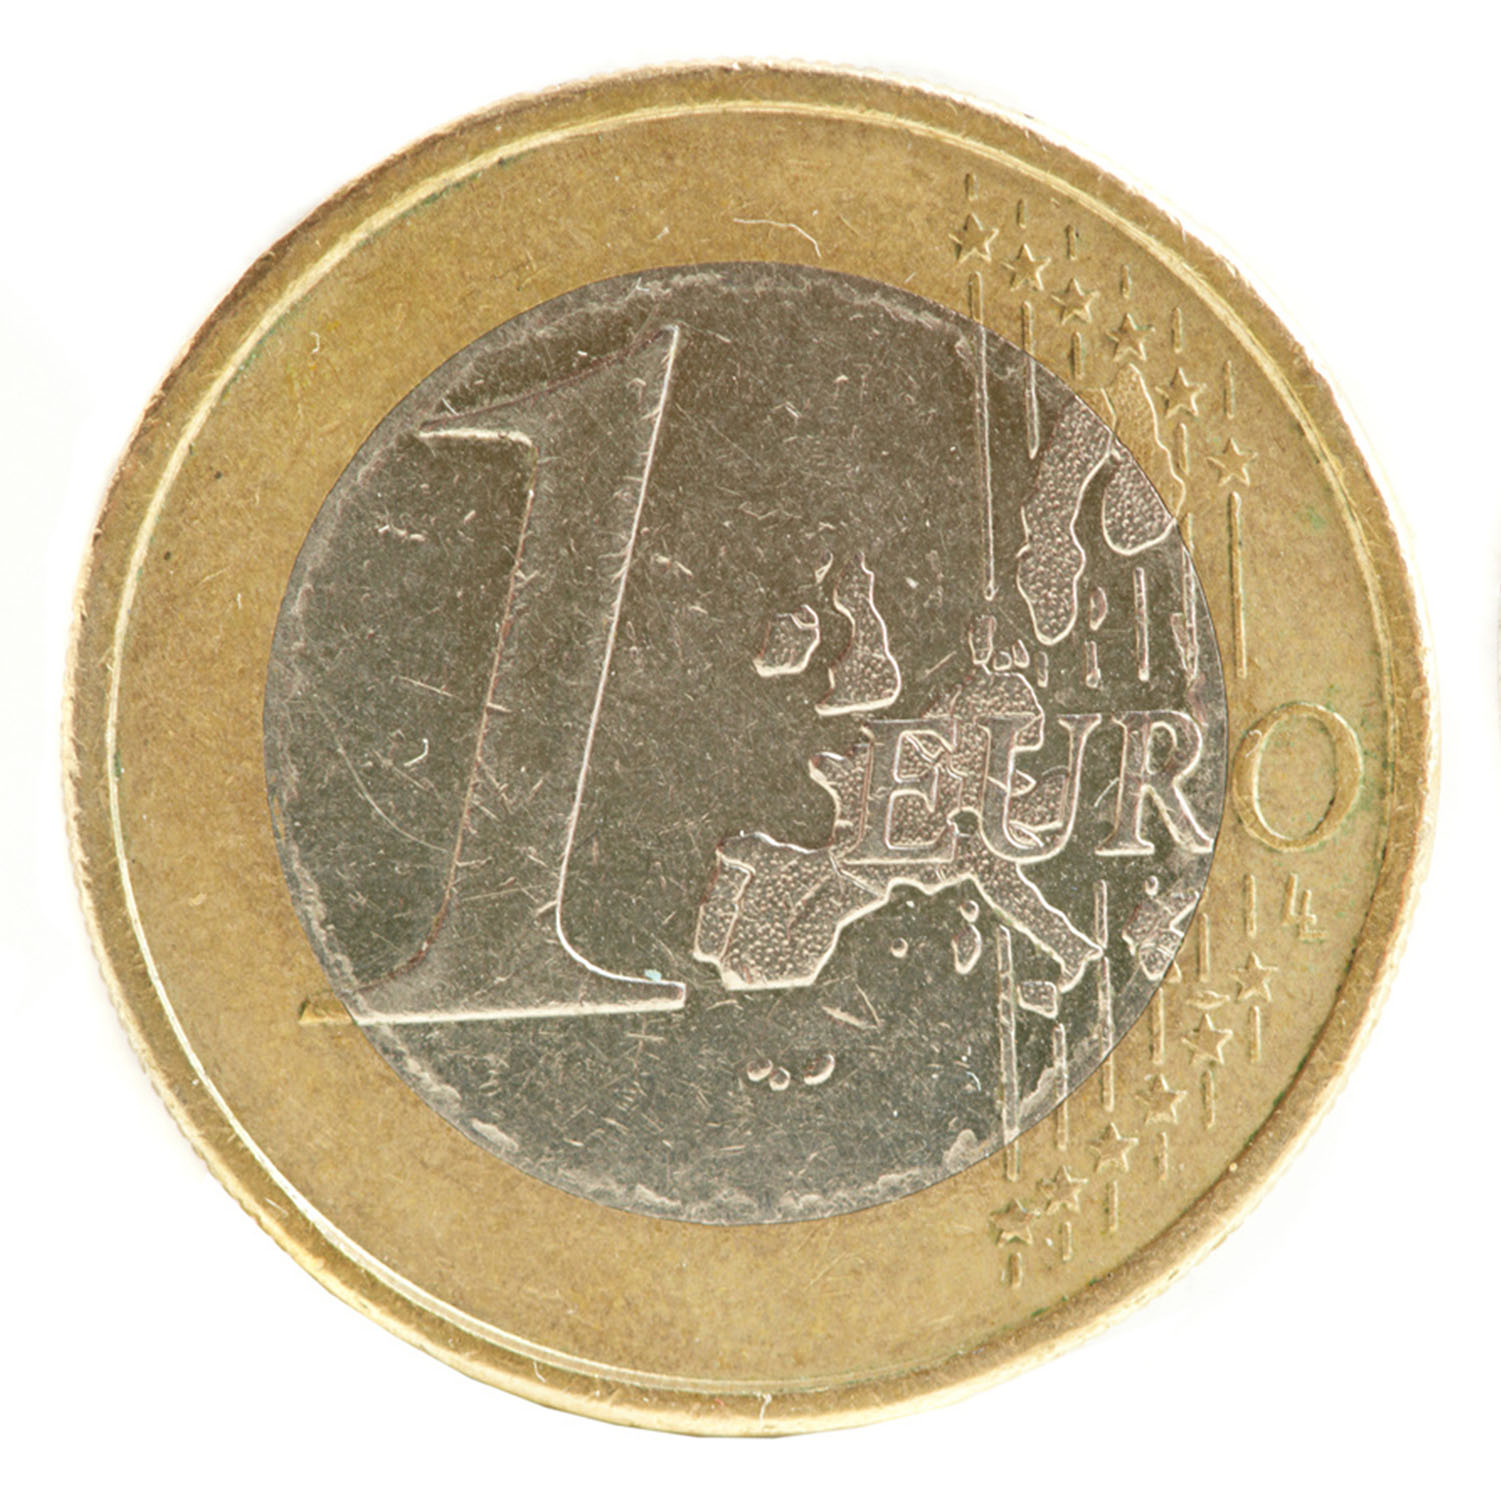 Euro Münzaufkleber Set 4 Stk. - FUN Sticker Kleingeld rund selbstklebend täuschend echt